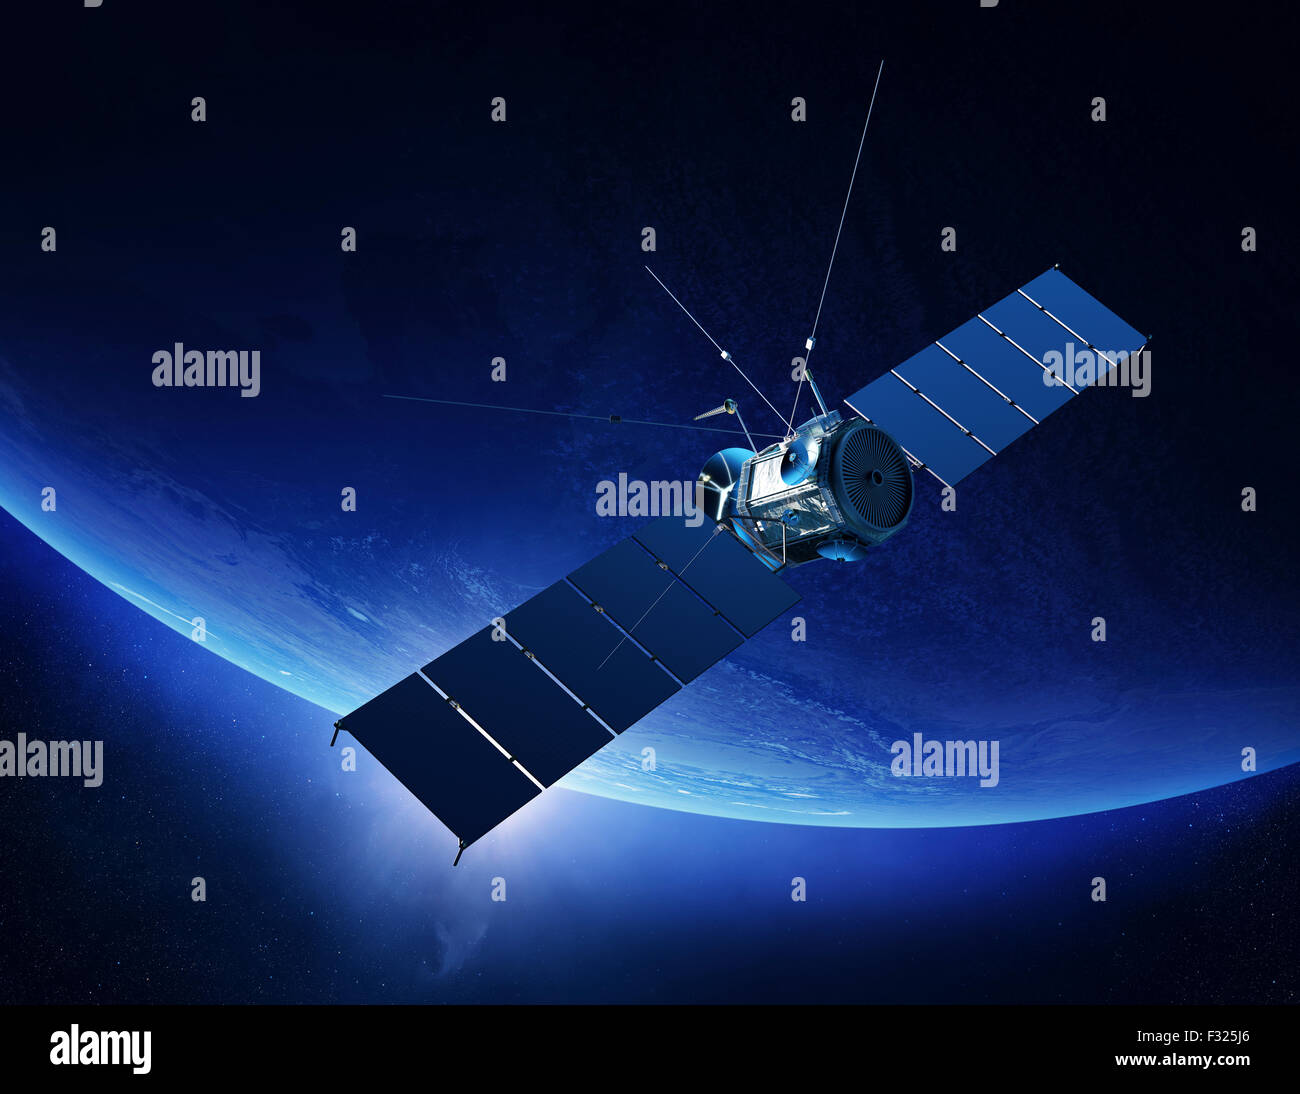 Kommunikationssatelliten, die Erde umkreisen, mit Sonnenaufgang im Raum (Elemente von diesem 3d Render, eingerichtet von der NASA) Stockfoto